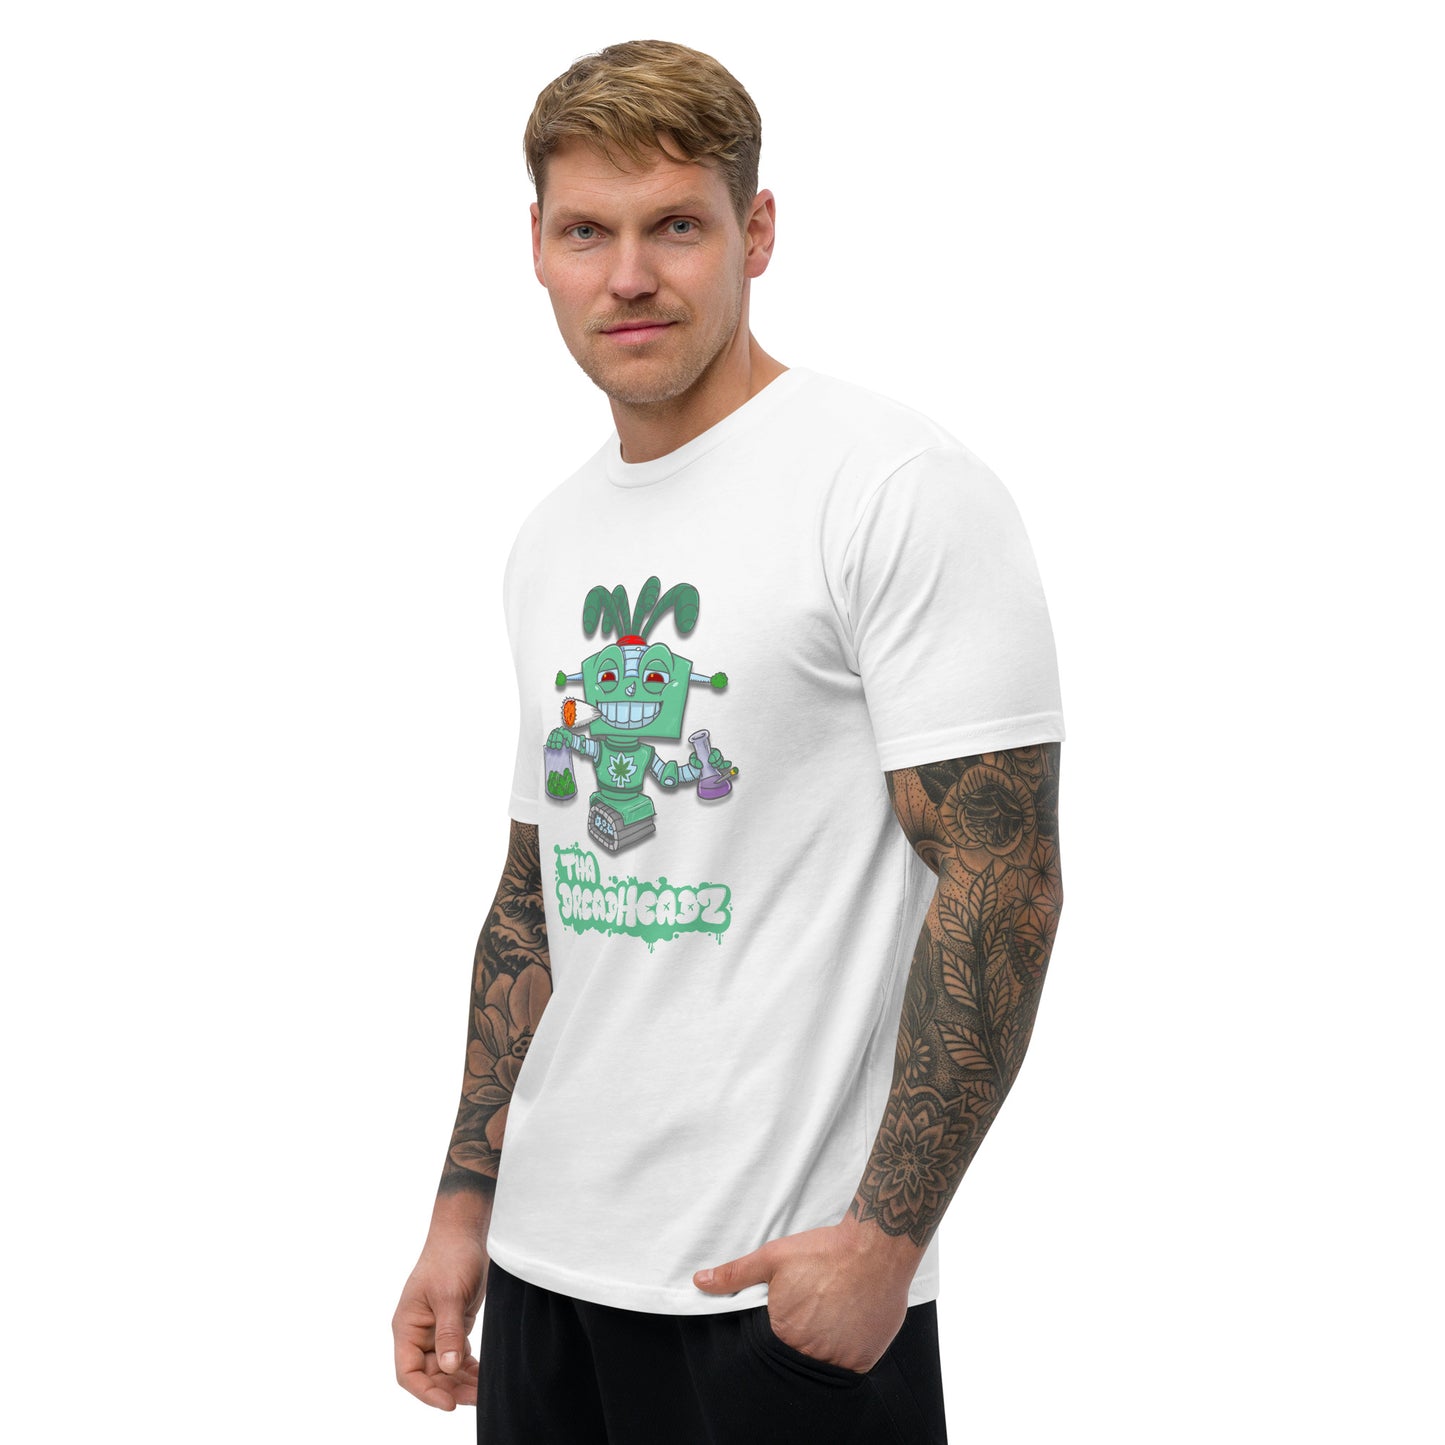 ChronBot T-shirt